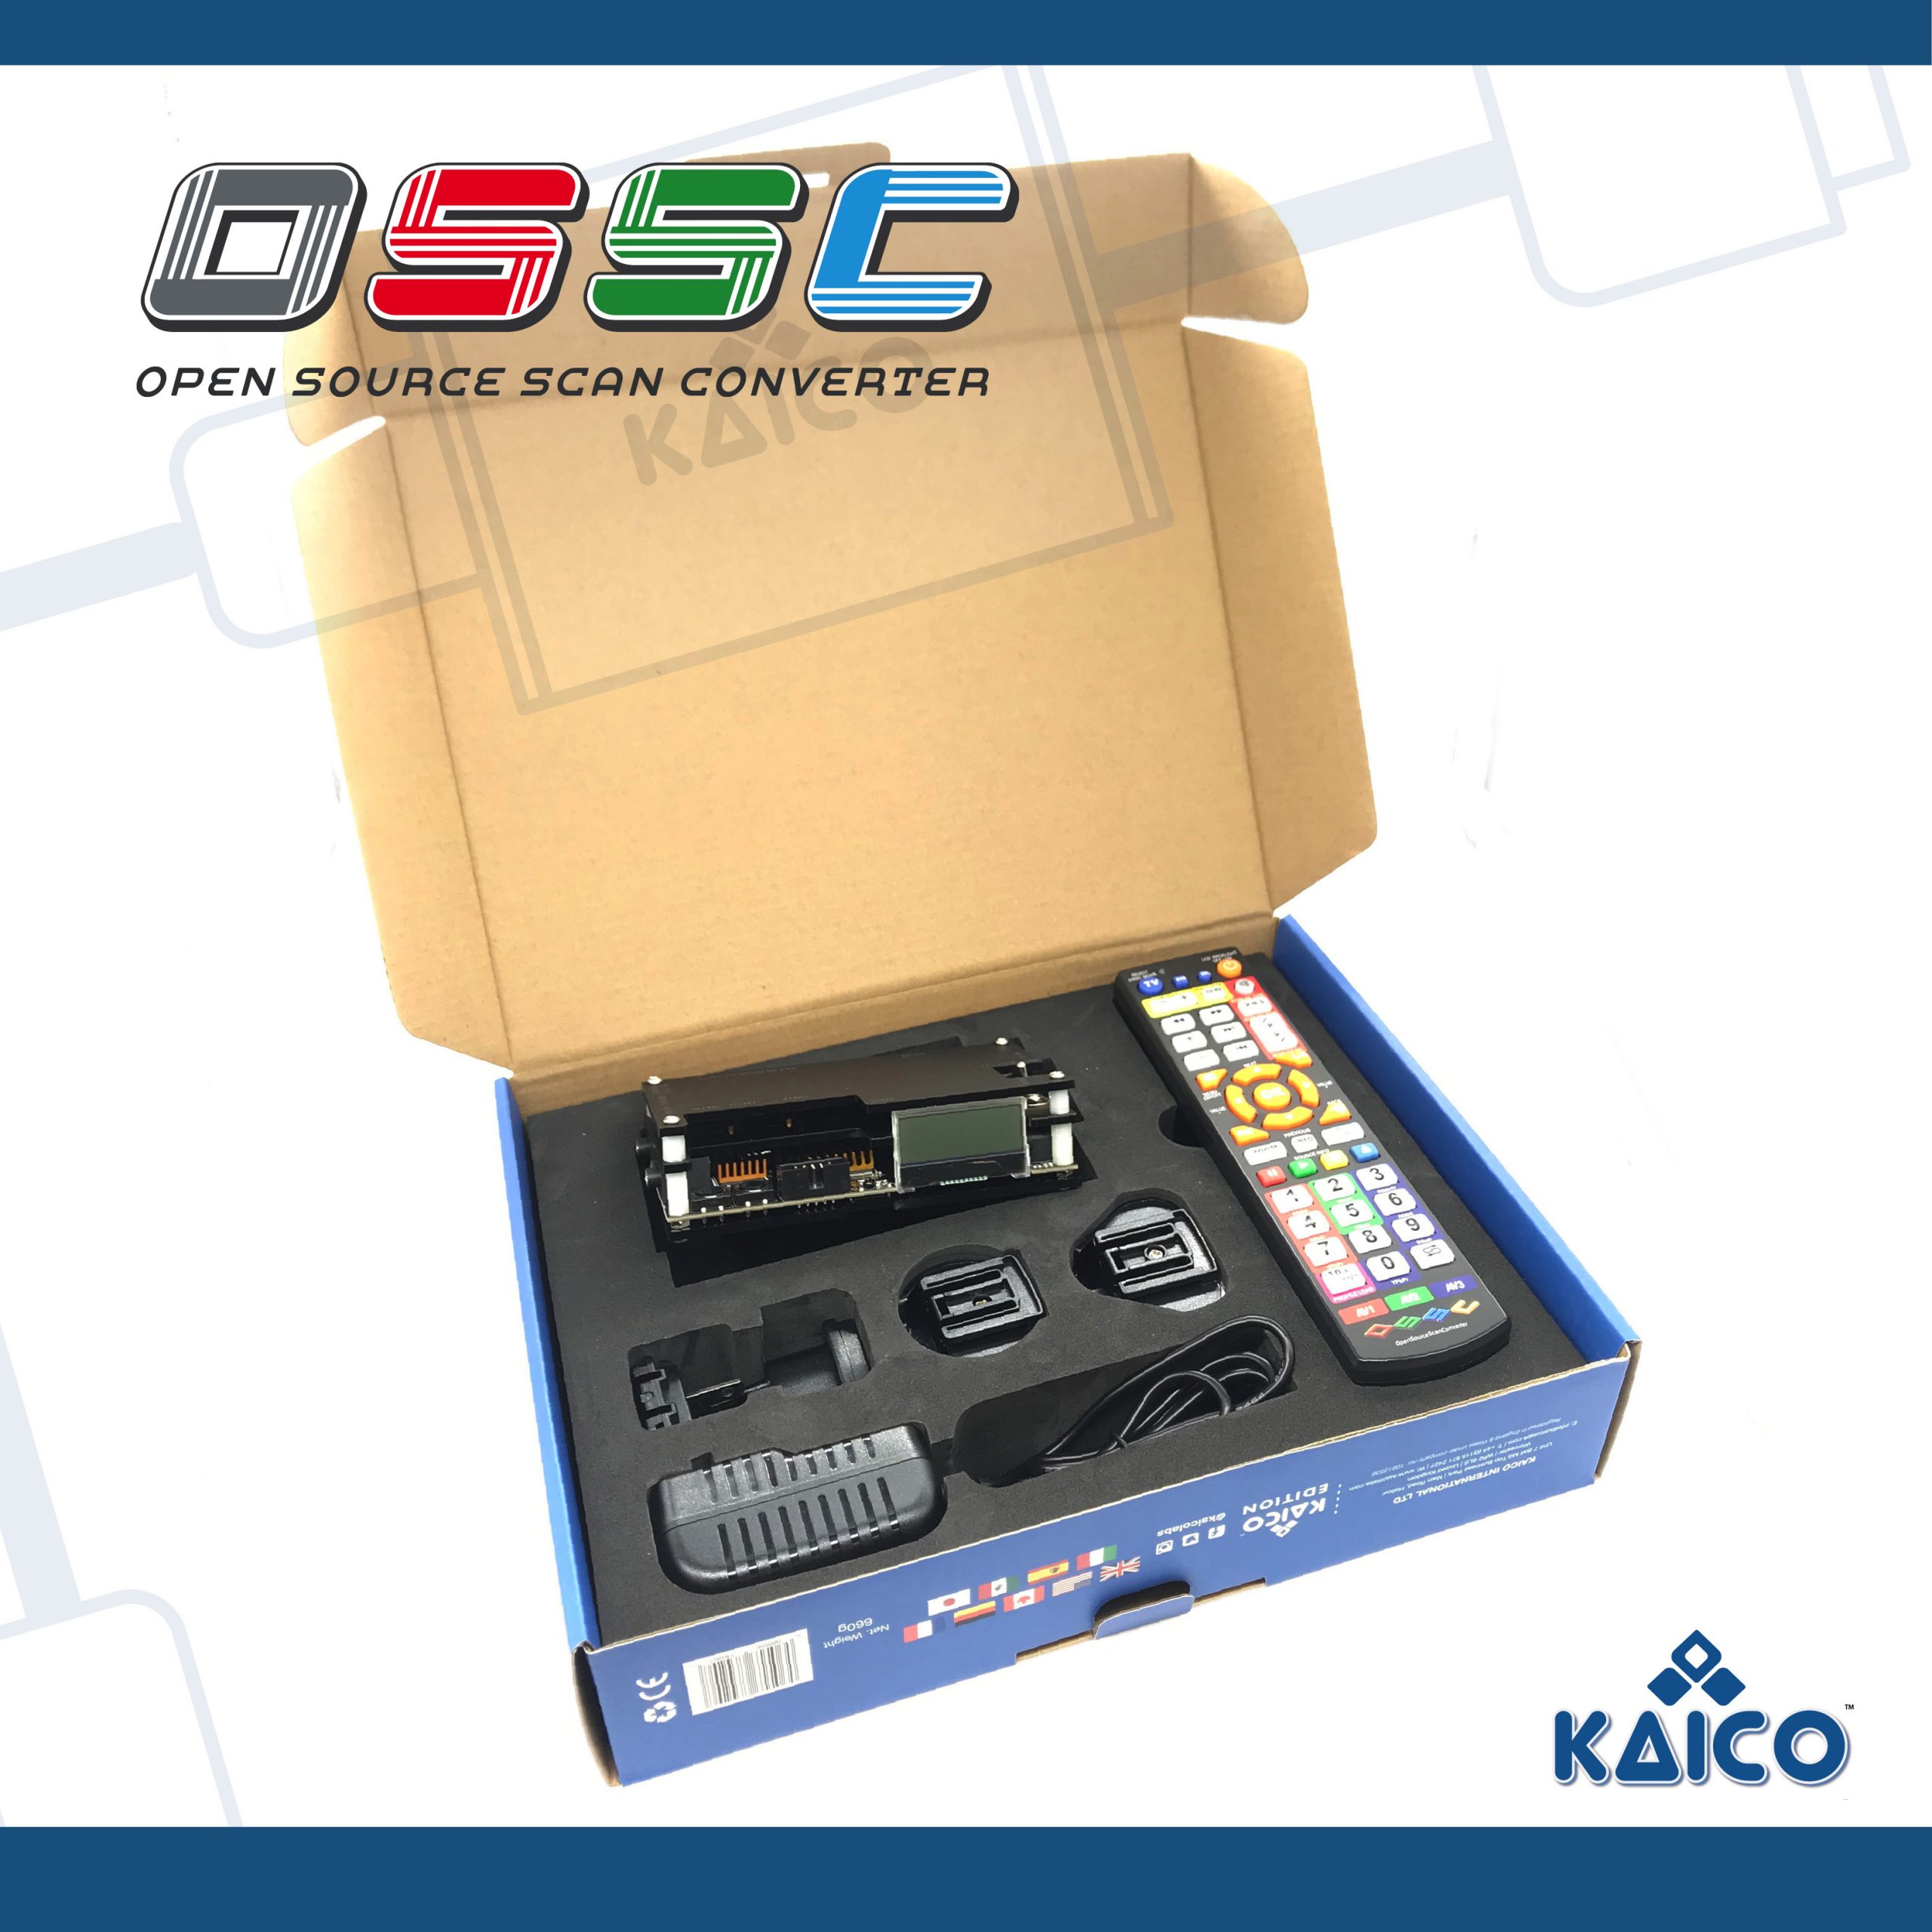 Kaico Edition Open Source Scan Converter OSSC 1.6